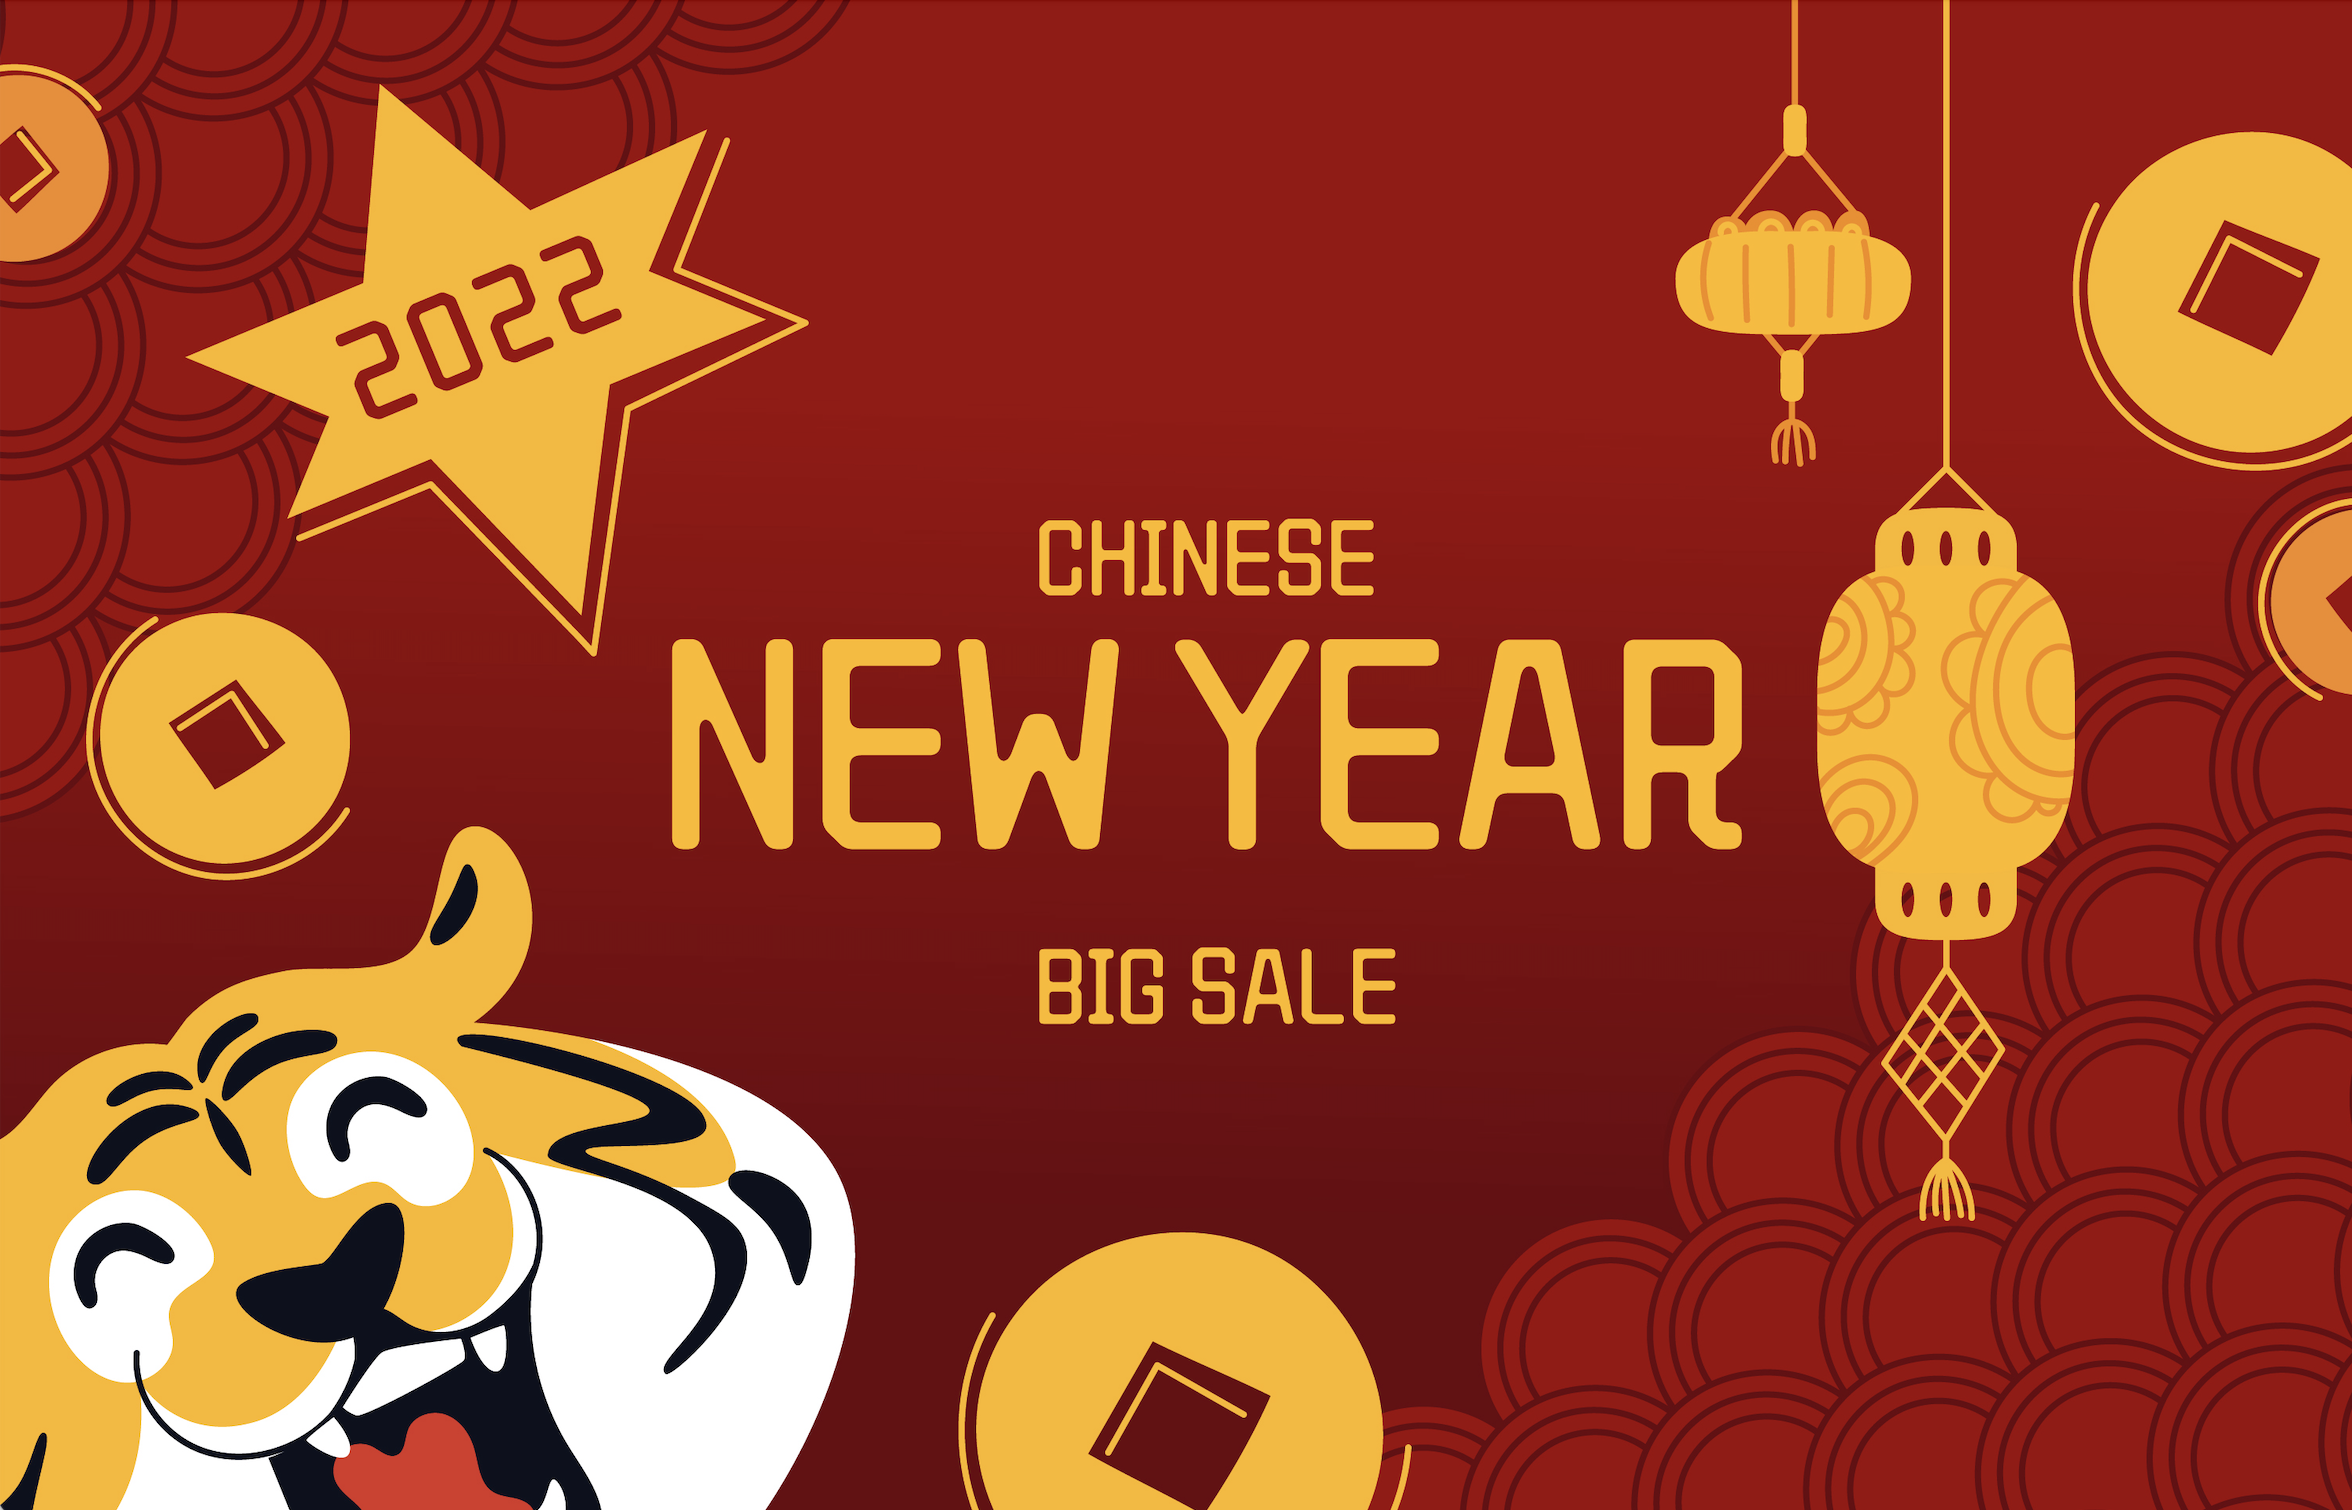 Chinese New Year Restaurant Marketing